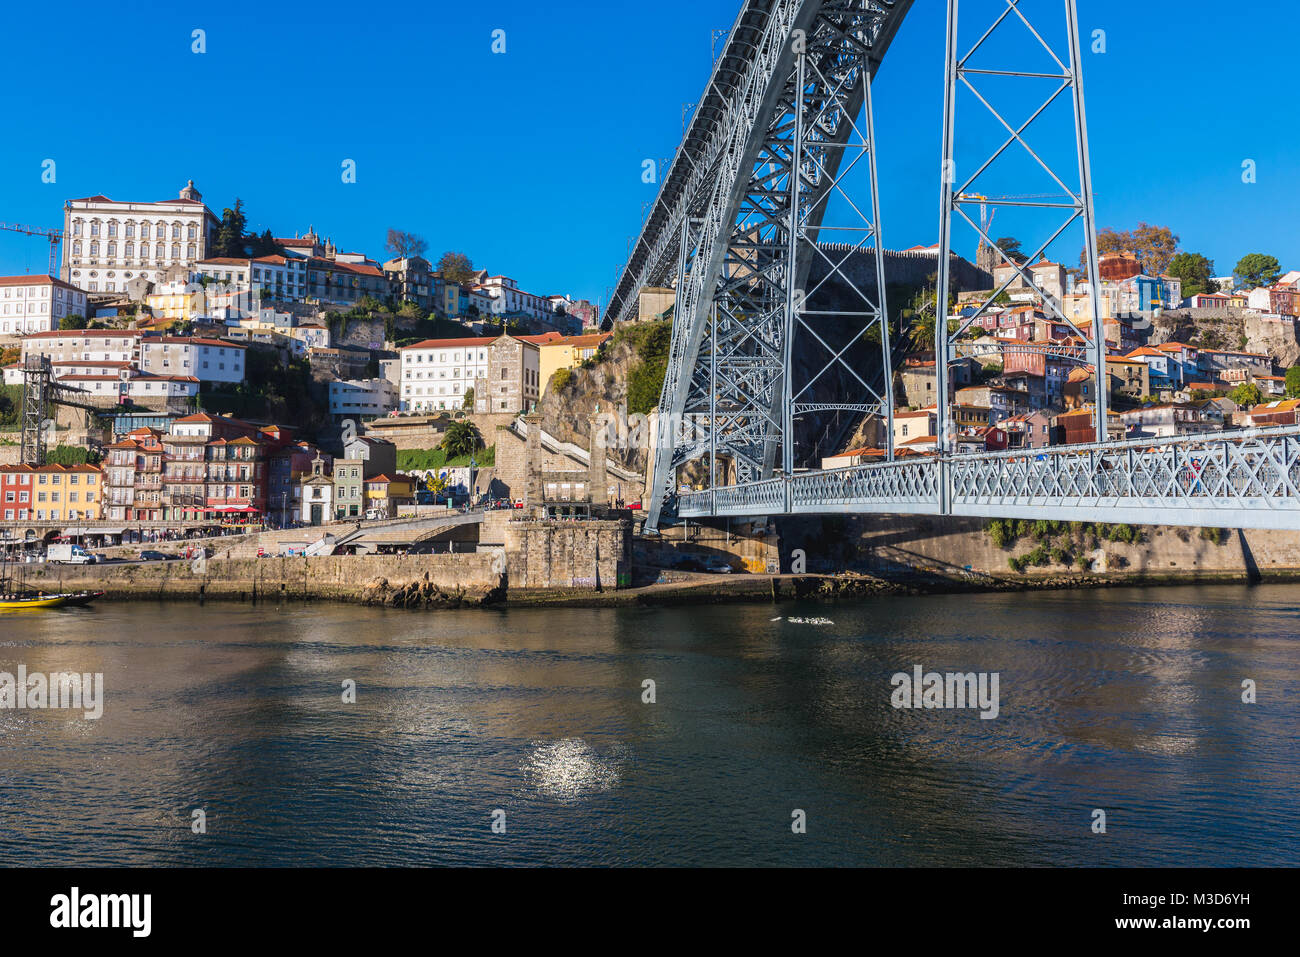 Dom Luis I Pont sur la rivière Douro entre Porto et Vila Nova de Gaia villes du Portugal. Palais épiscopal sur le côté gauche Banque D'Images